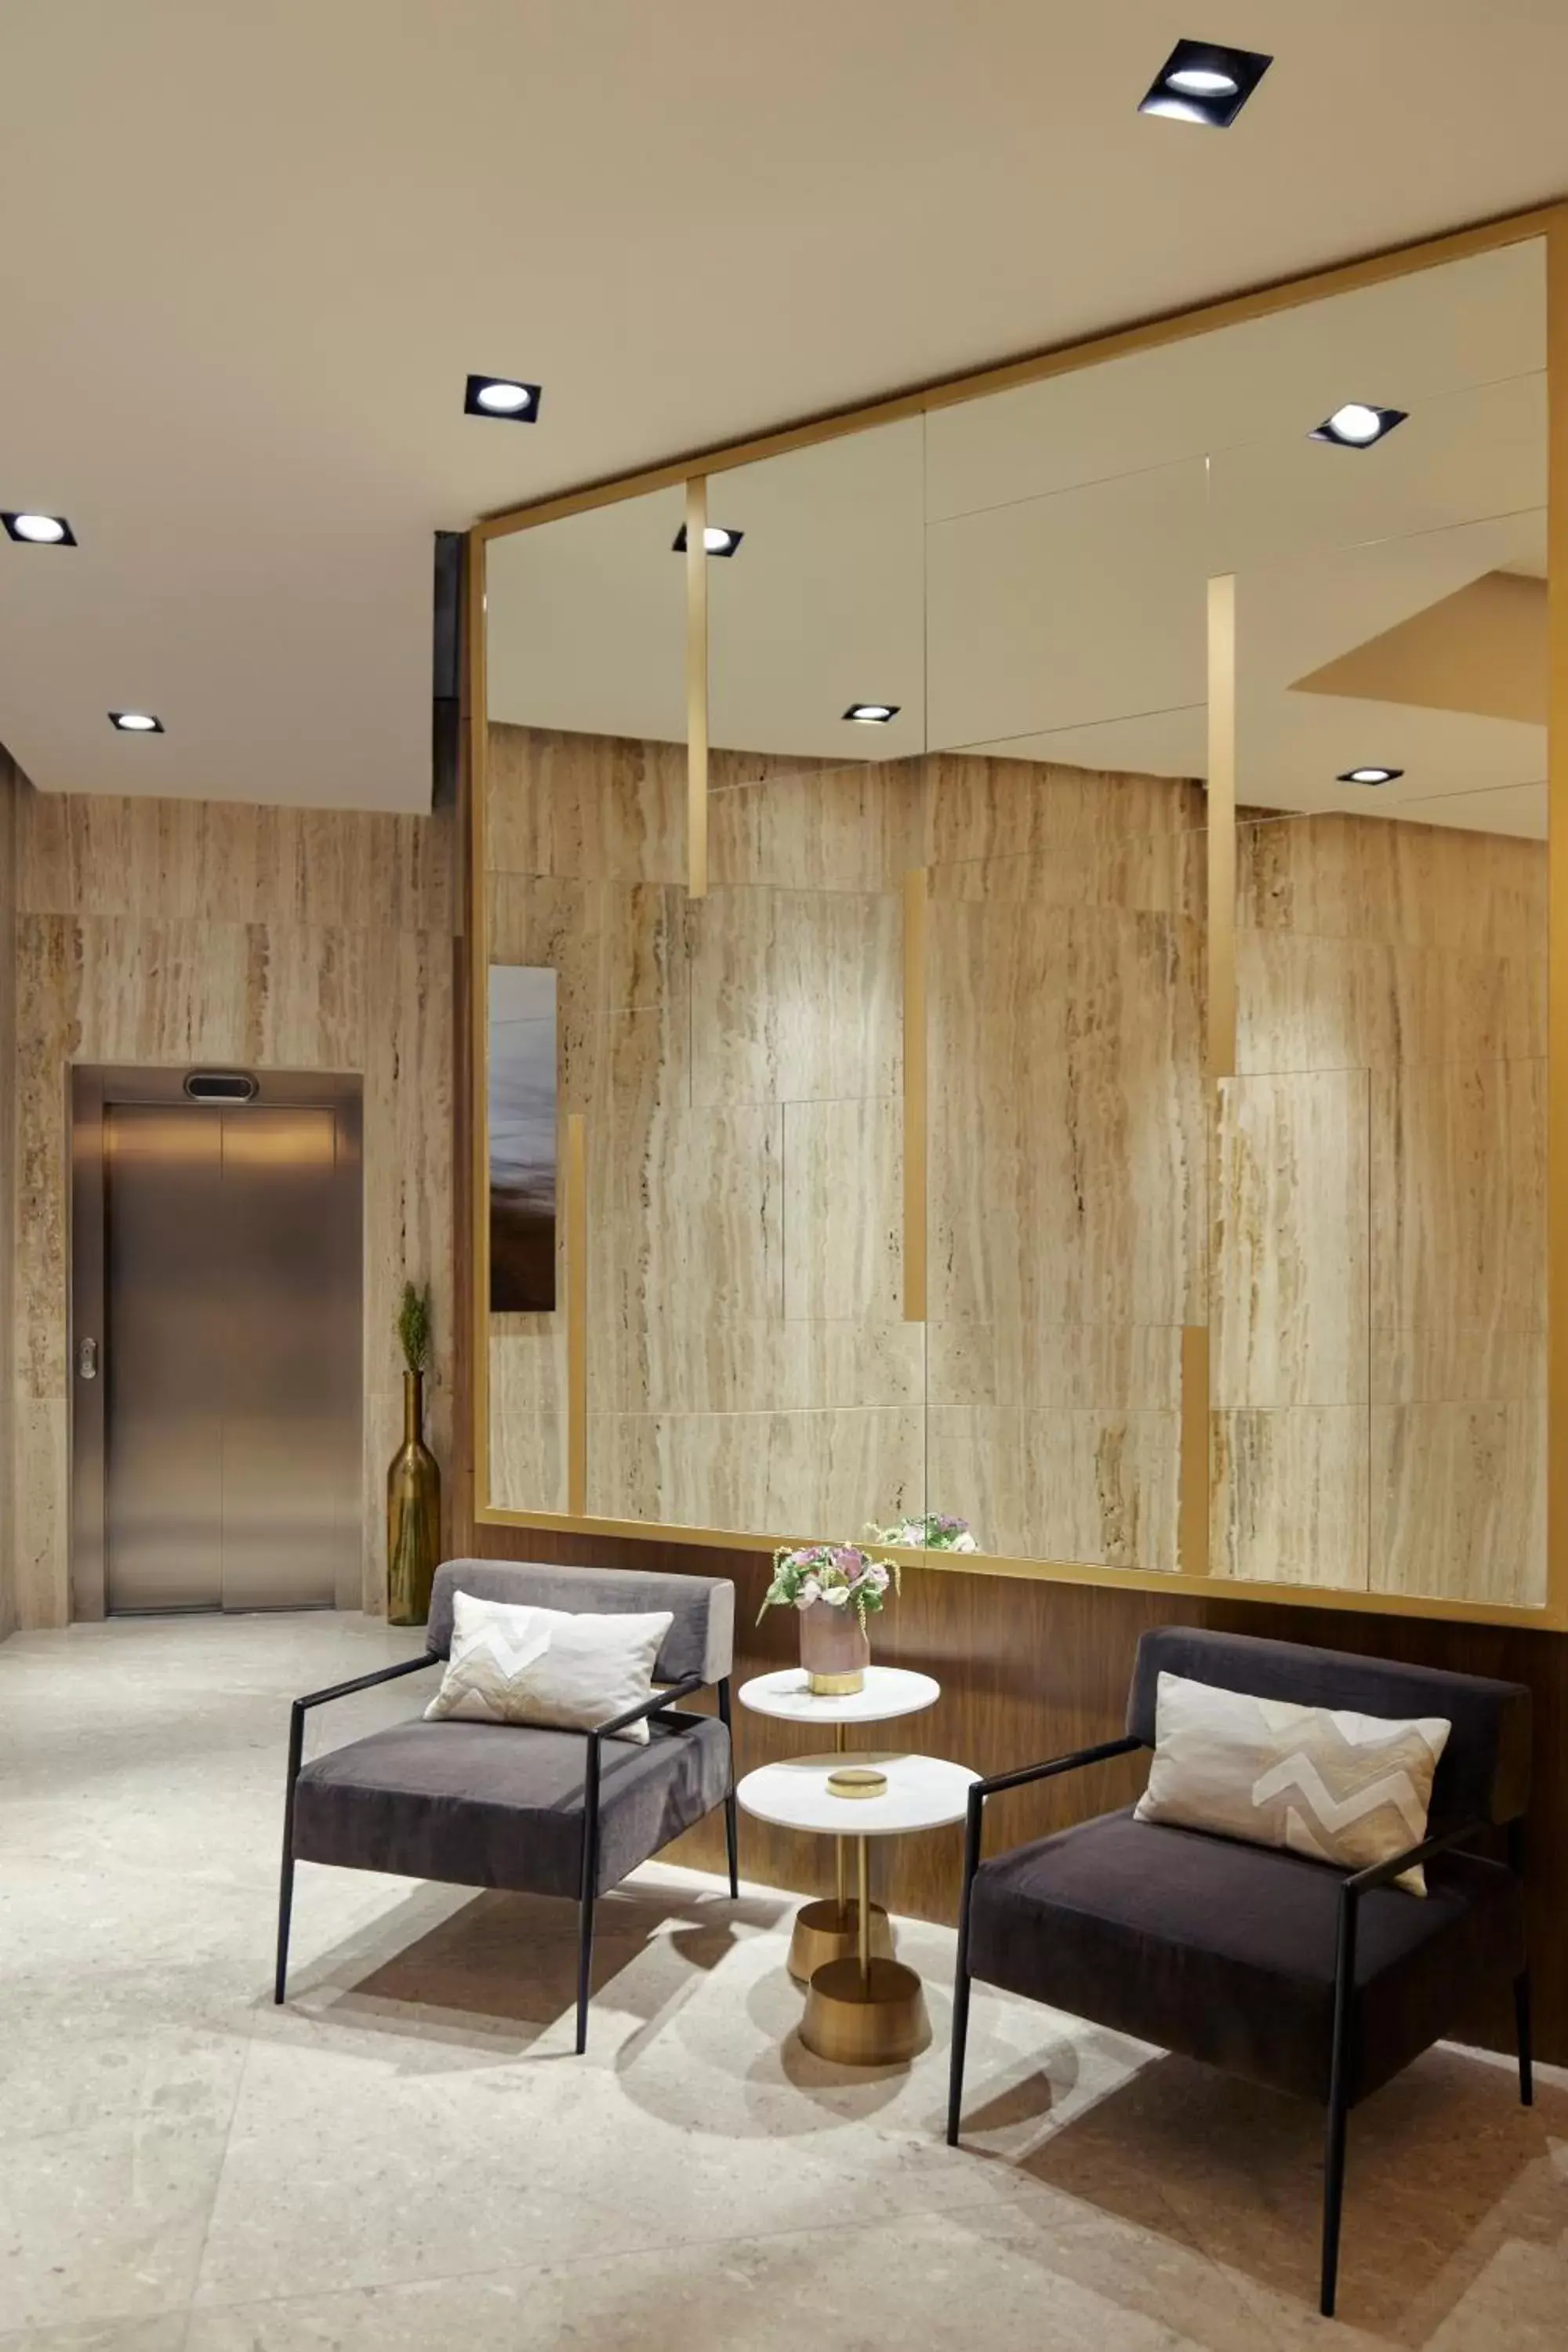 Lobby or reception in Felix Luxury Plus by Viadora